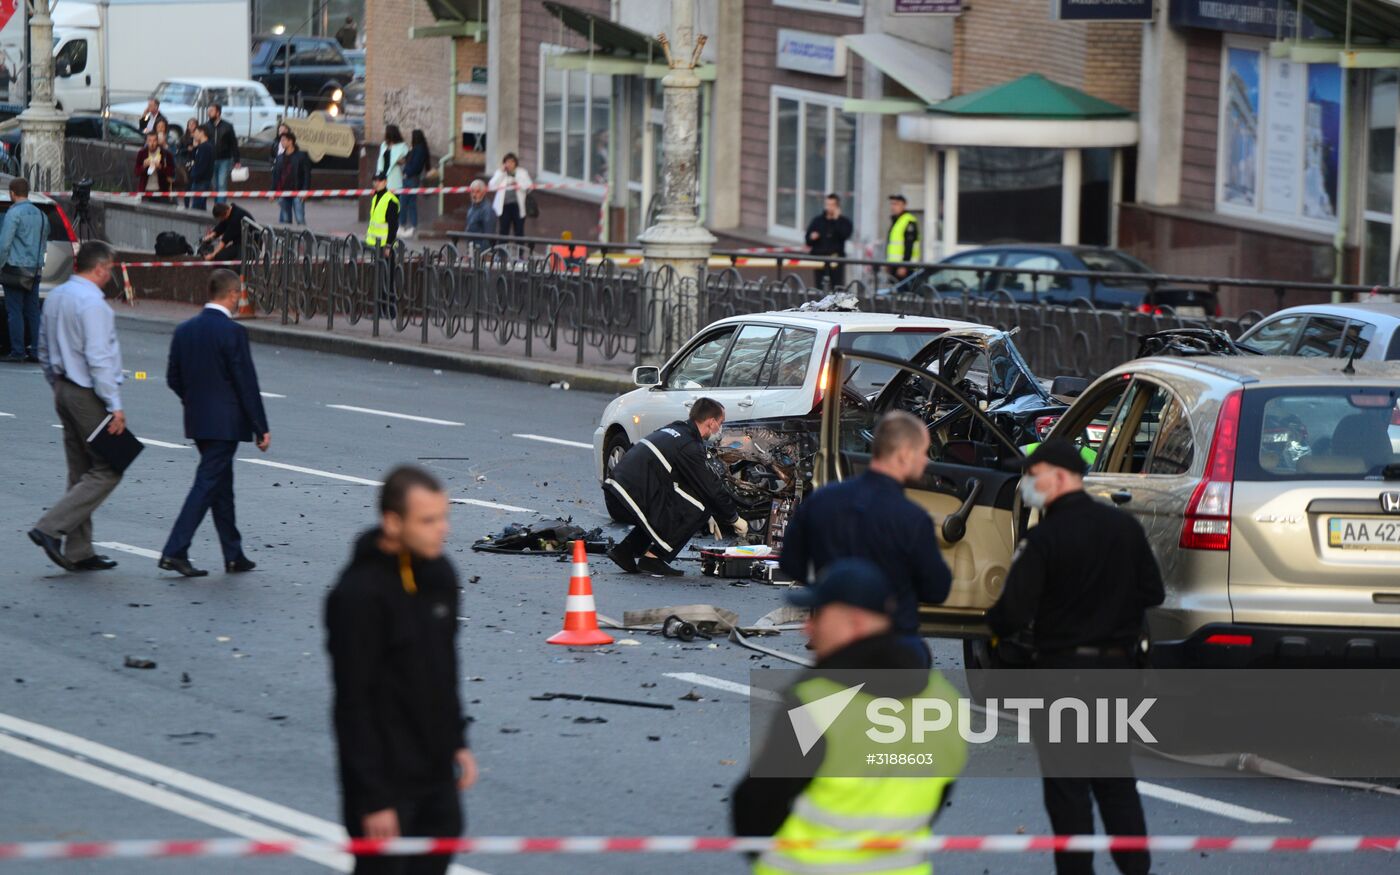 Car explodes in central Kiev